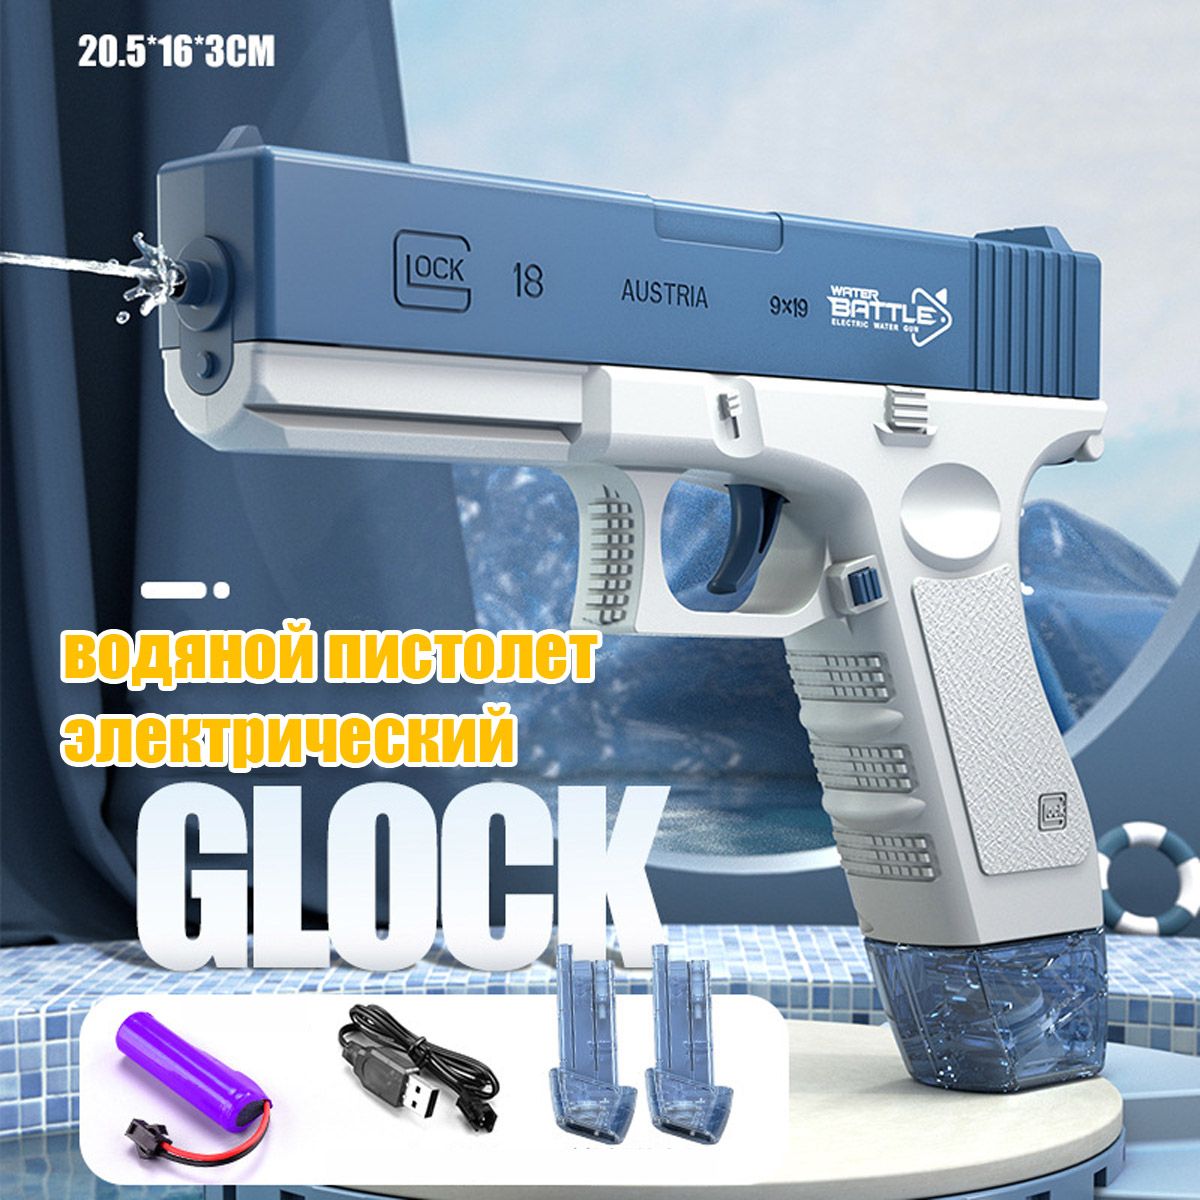 Электрический водный Пистолет игрушечный RASULEV Glok 18 на аккумуляторе электрический водный пистолет игрушечный на аккумуляторах 60 см cy036